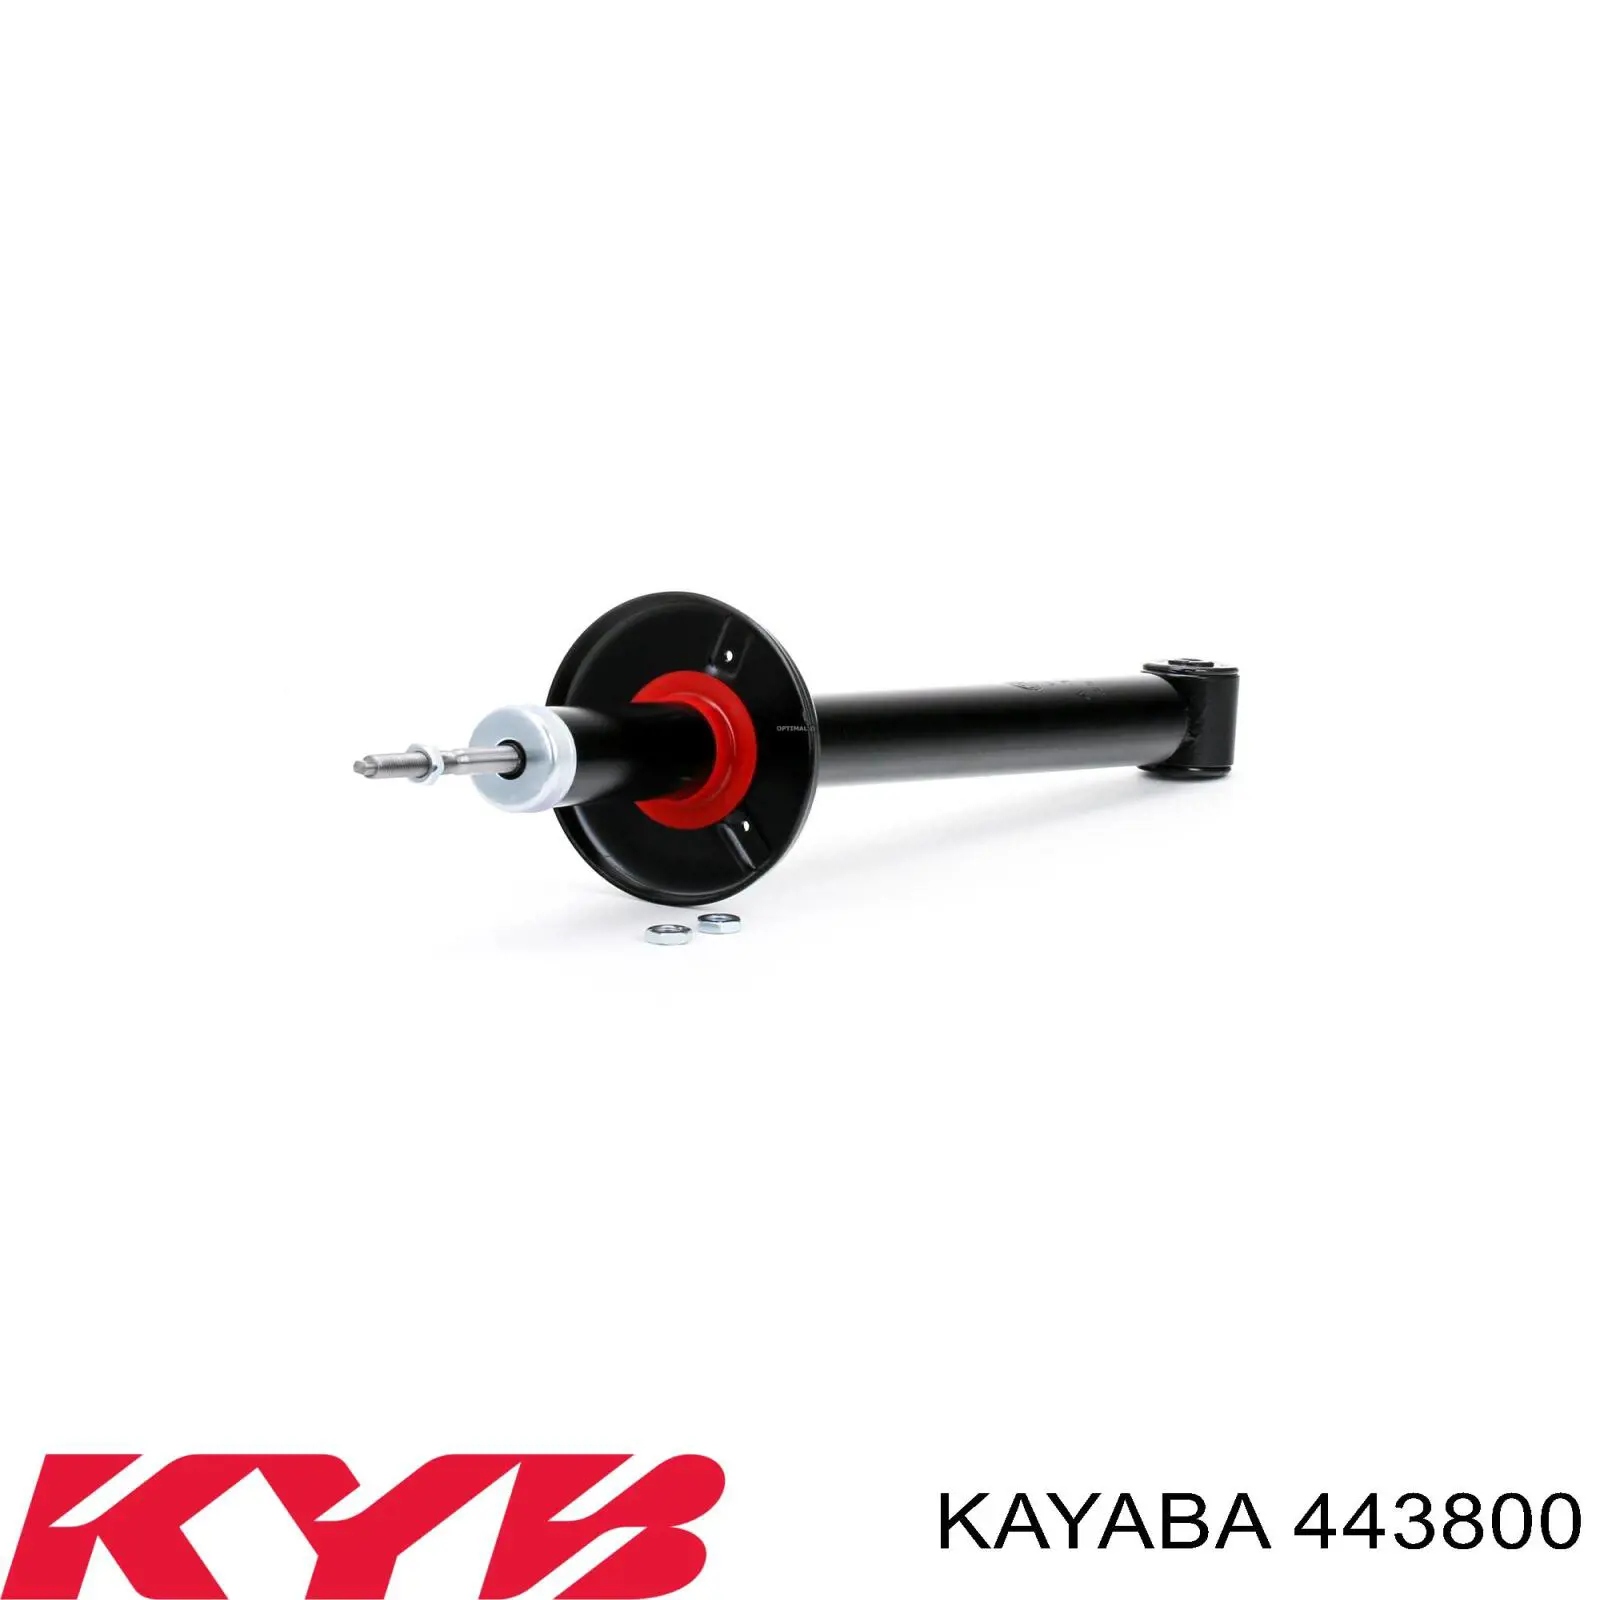 443800 Kayaba amortiguador trasero